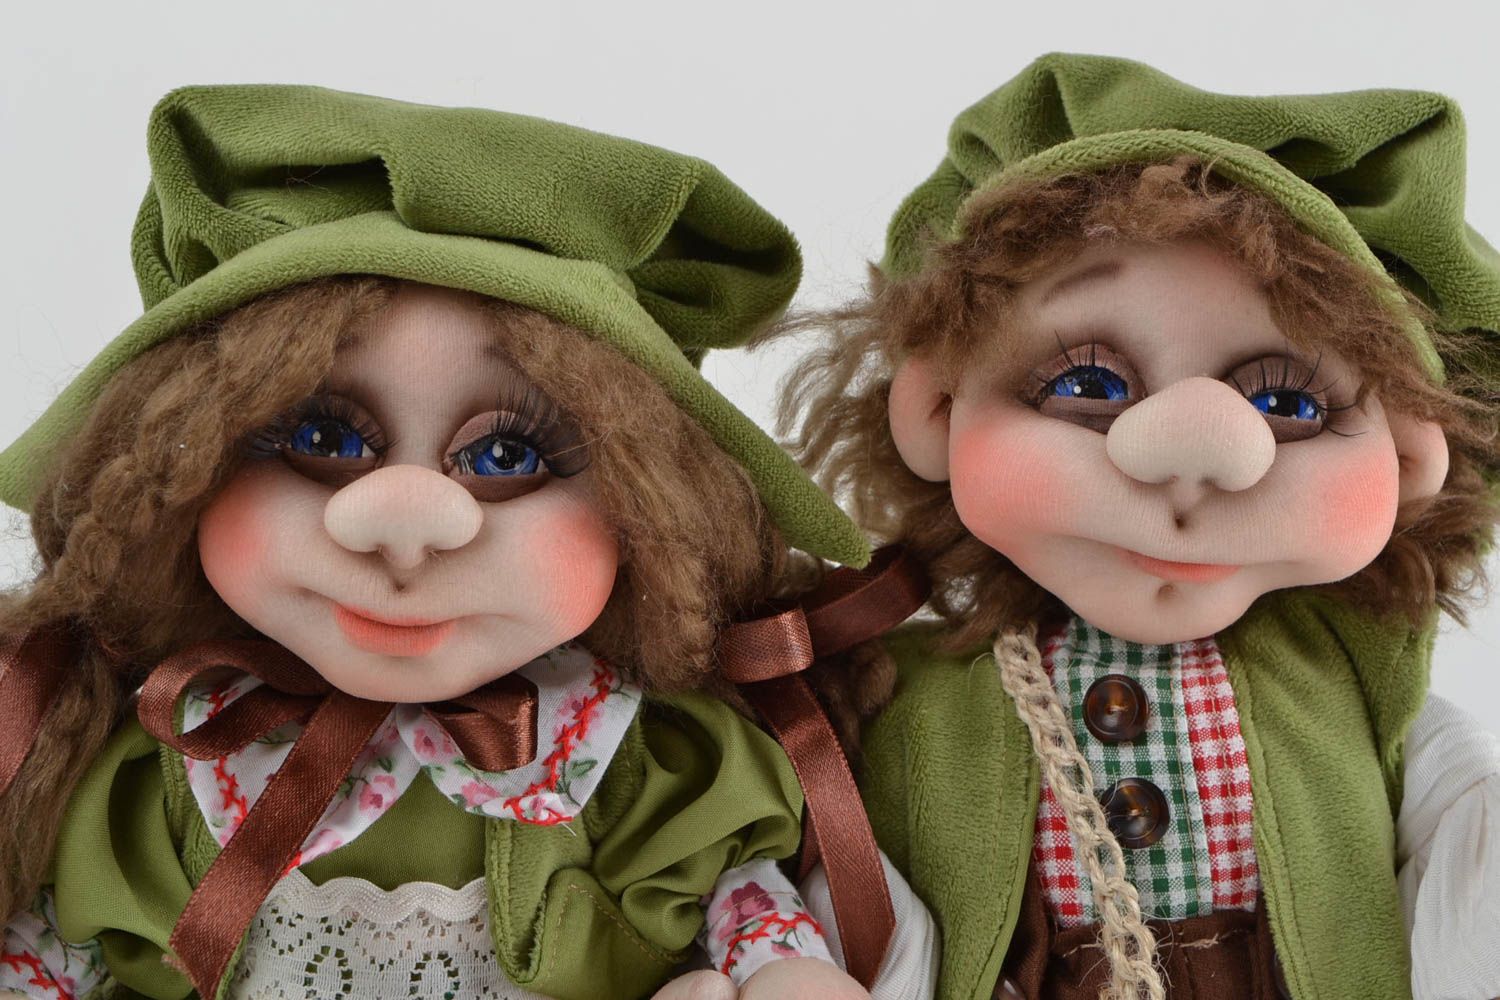 Handmade toys designer dolls set of 2 doll toys gifts for children home decor photo 4